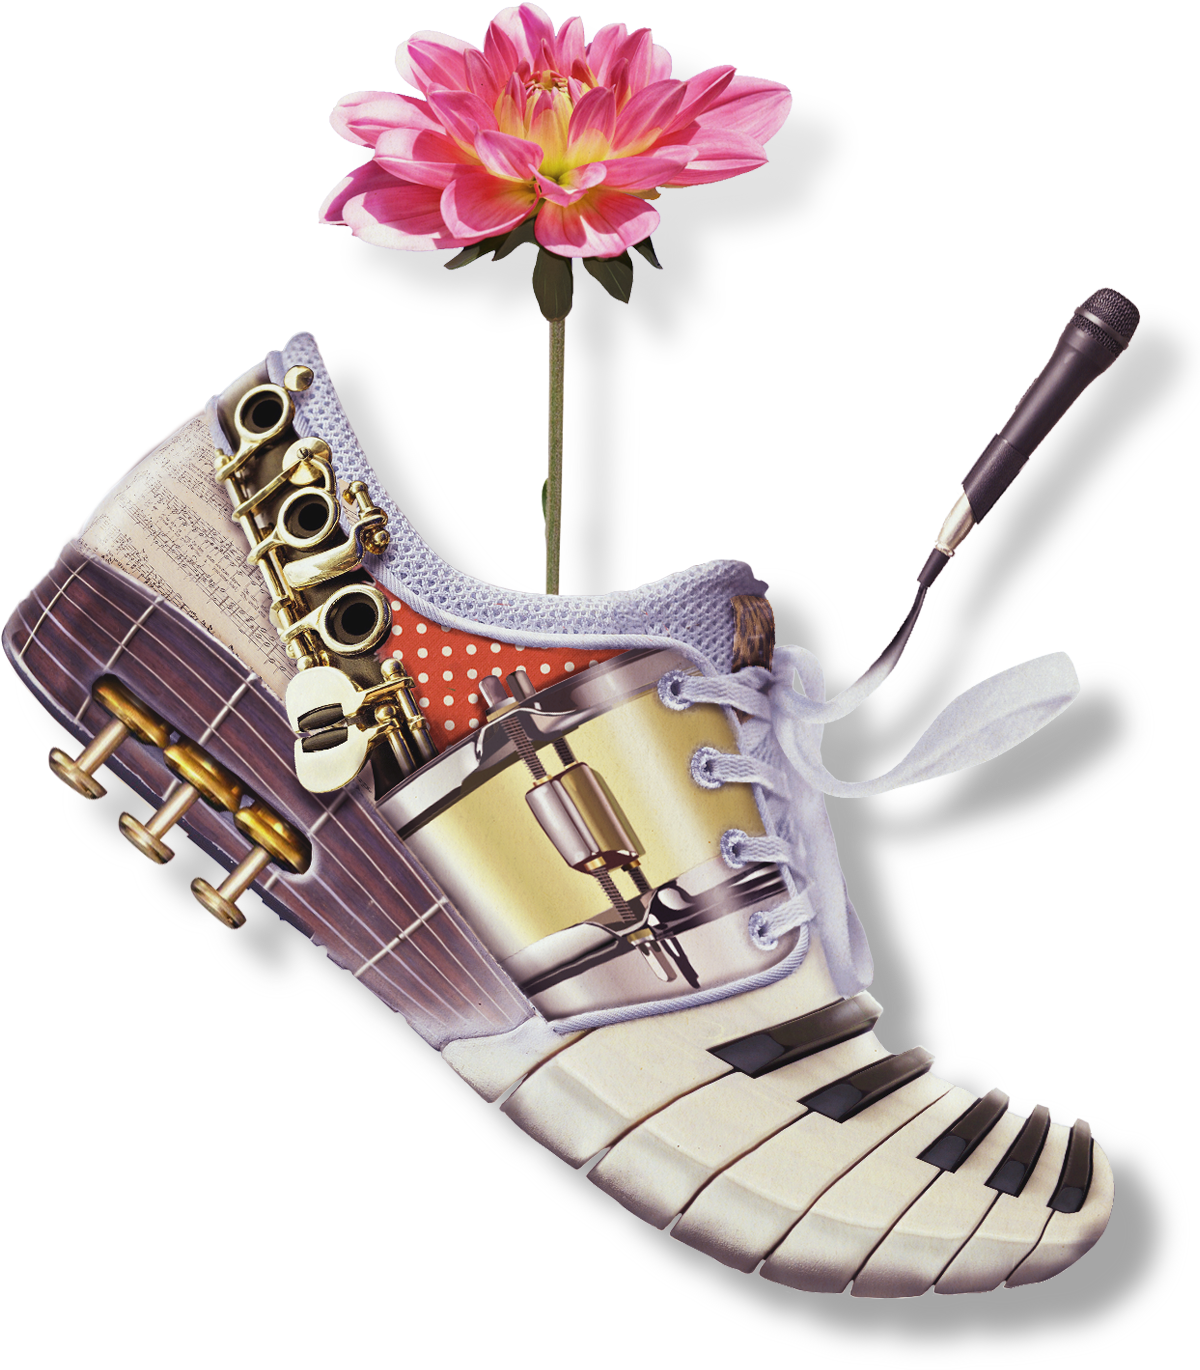 楽器の靴。駆け抜けるオーケストラをイメージしています。花は生み出される成果の象徴です